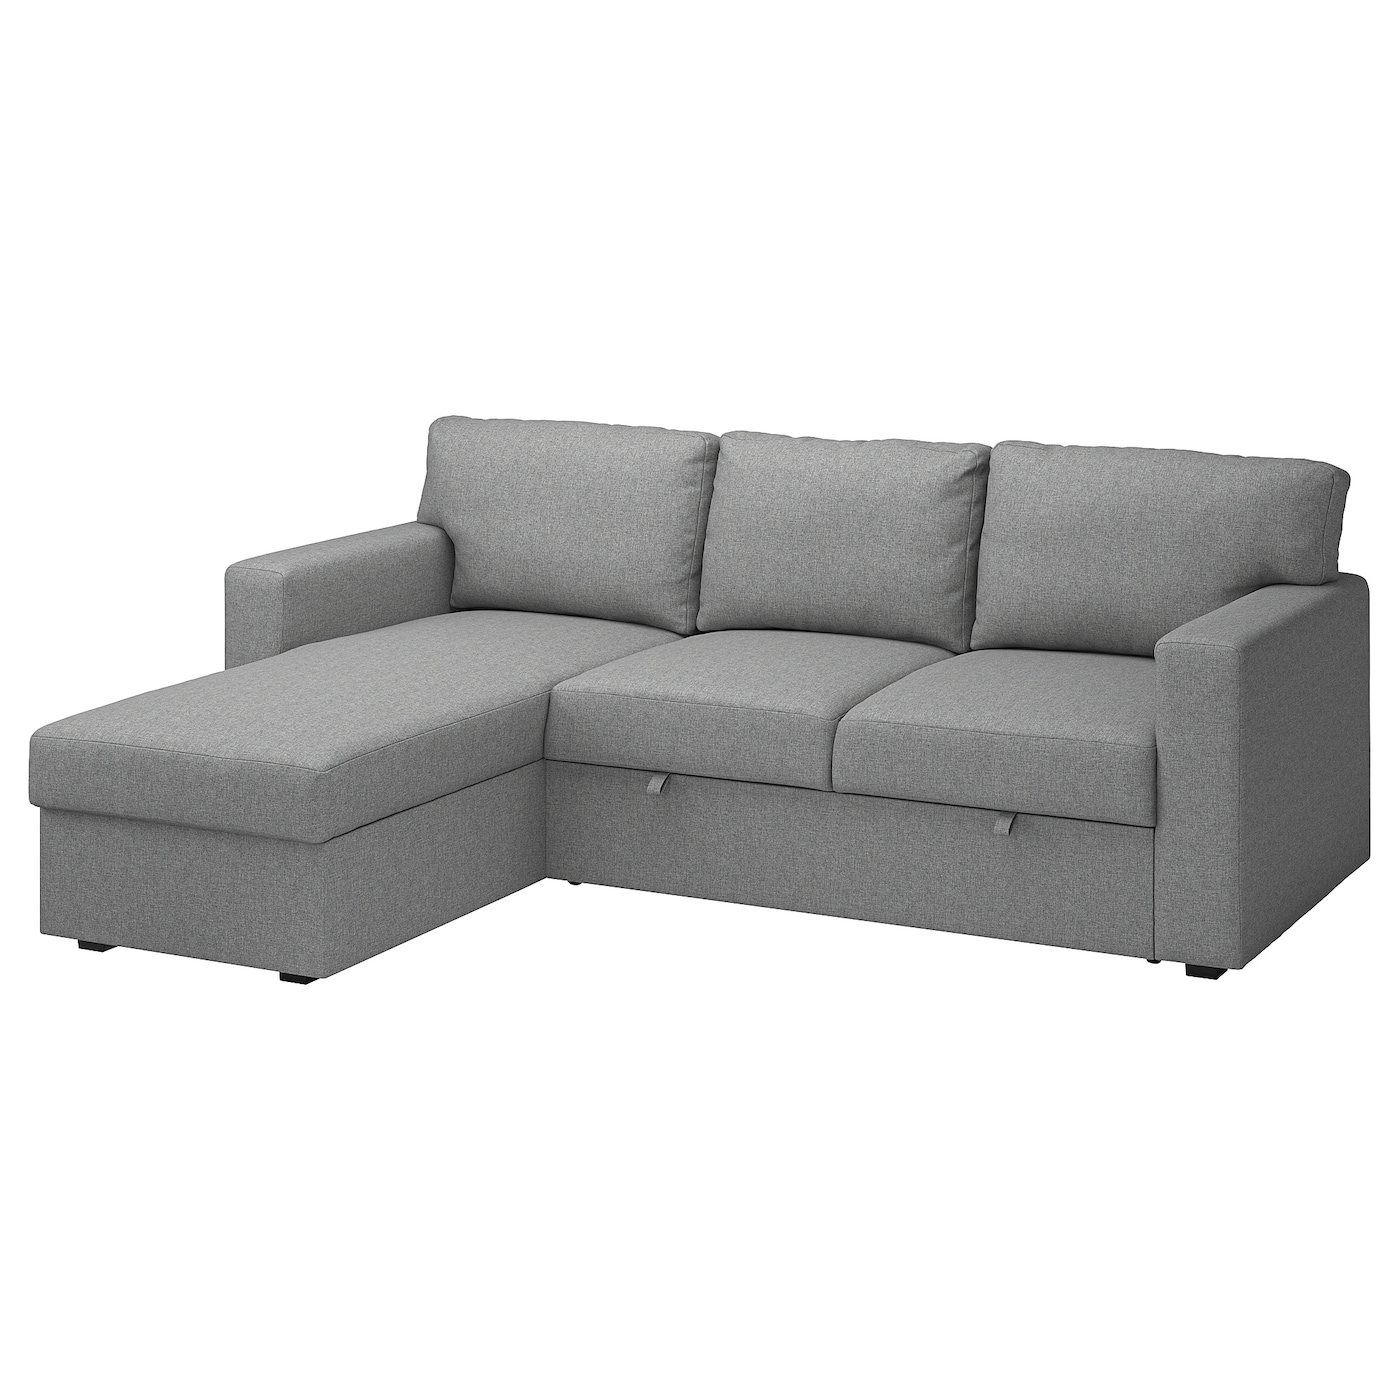 БОРСЛОВ 3-местный диван-кровать + диван, Тибблби бежевый/серый BÅRSLÖV IKEA диван кровать шарм дизайн уют 2 серый